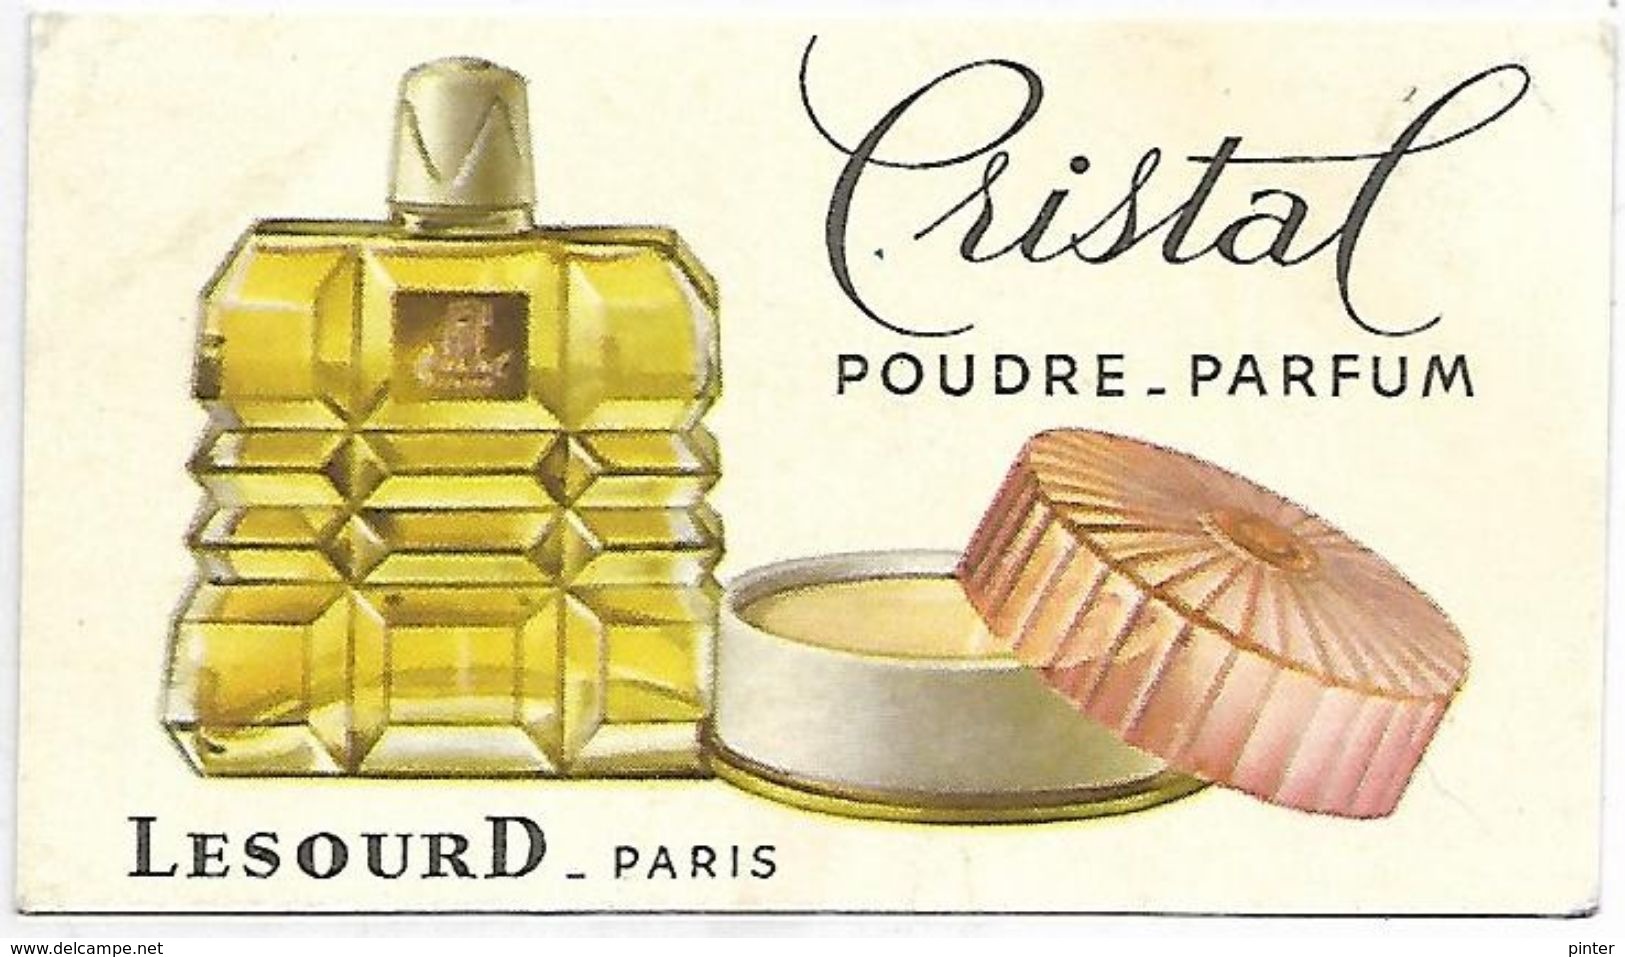 PUBLICITE - CRISTAL Poudre-Parfum - LESOURD Paris - Advertising